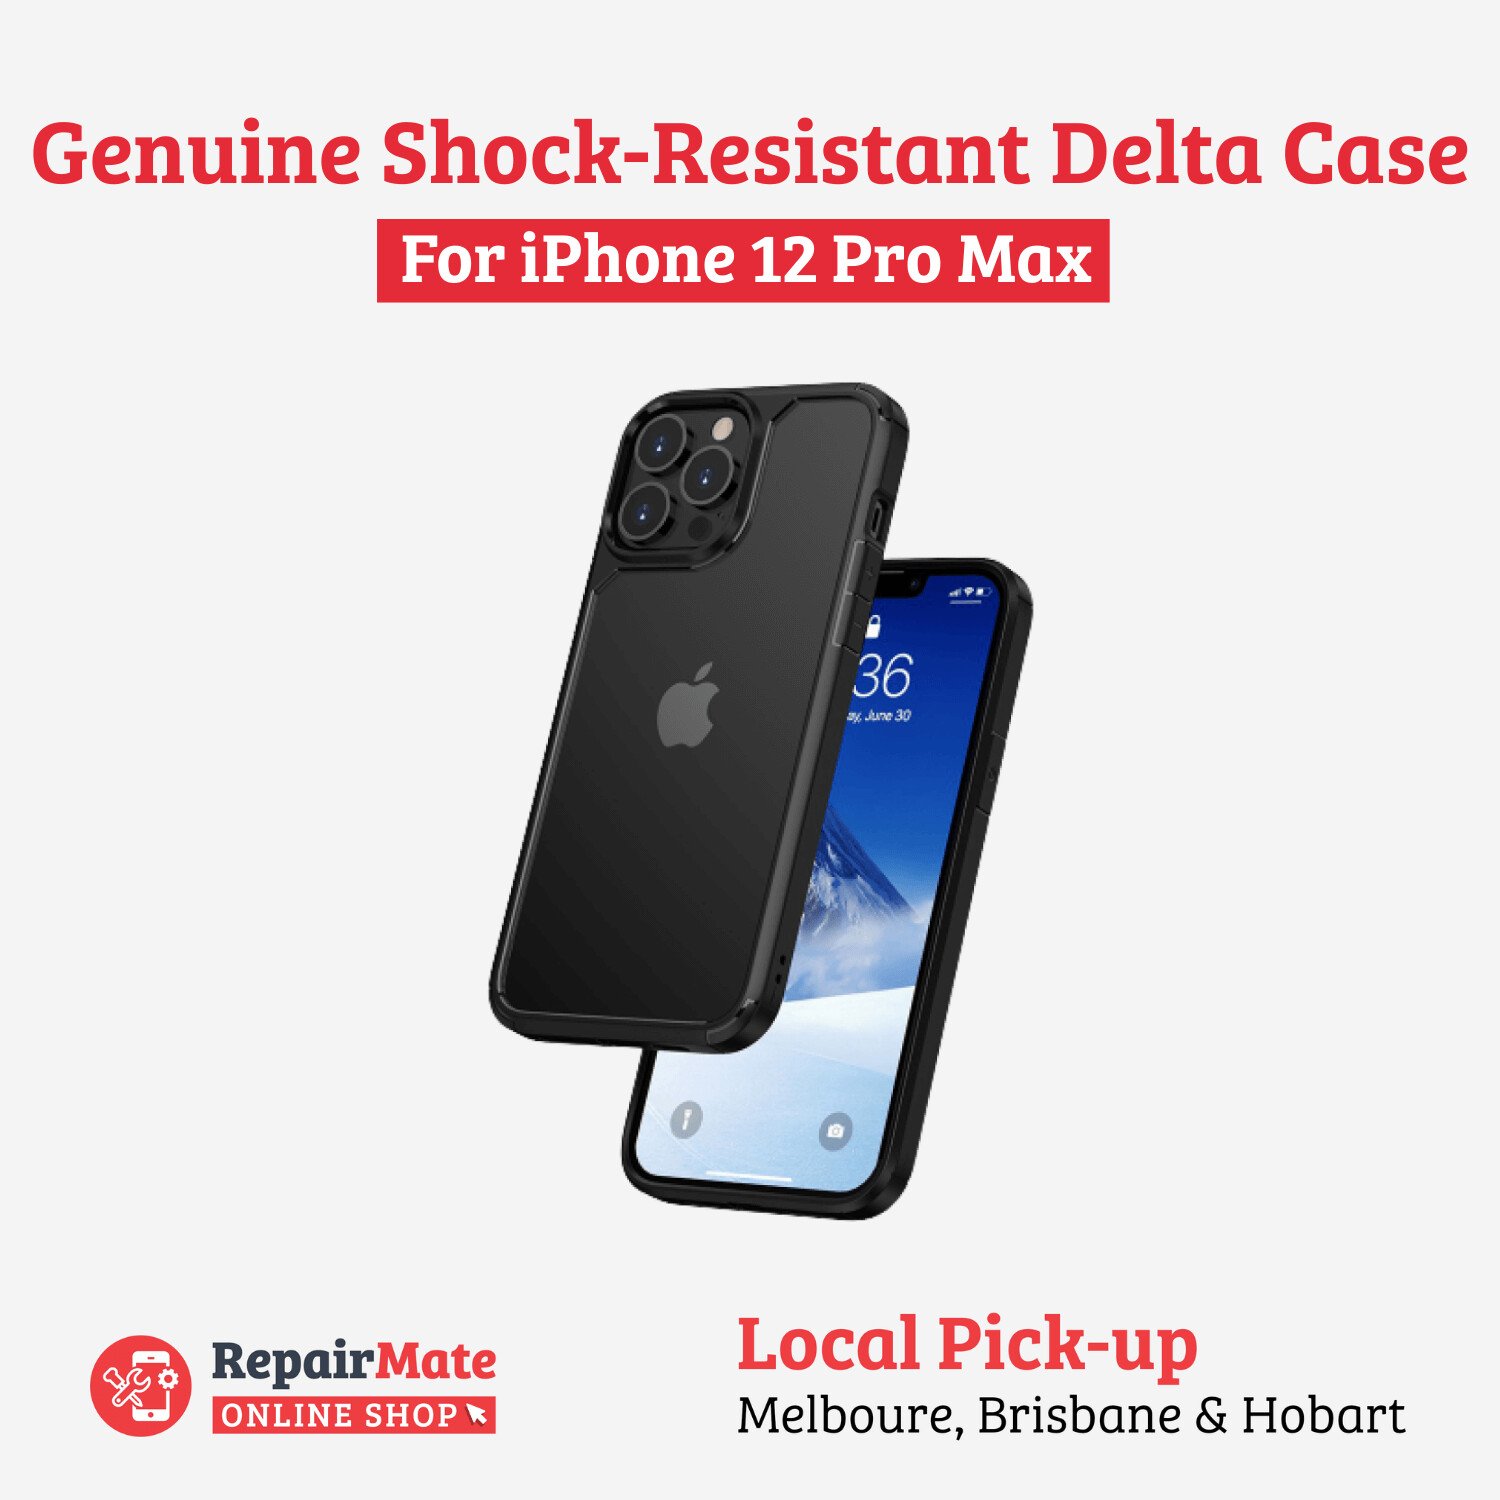 iPhone 12 Pro Max Genuine Shock-Resistant Delta Case